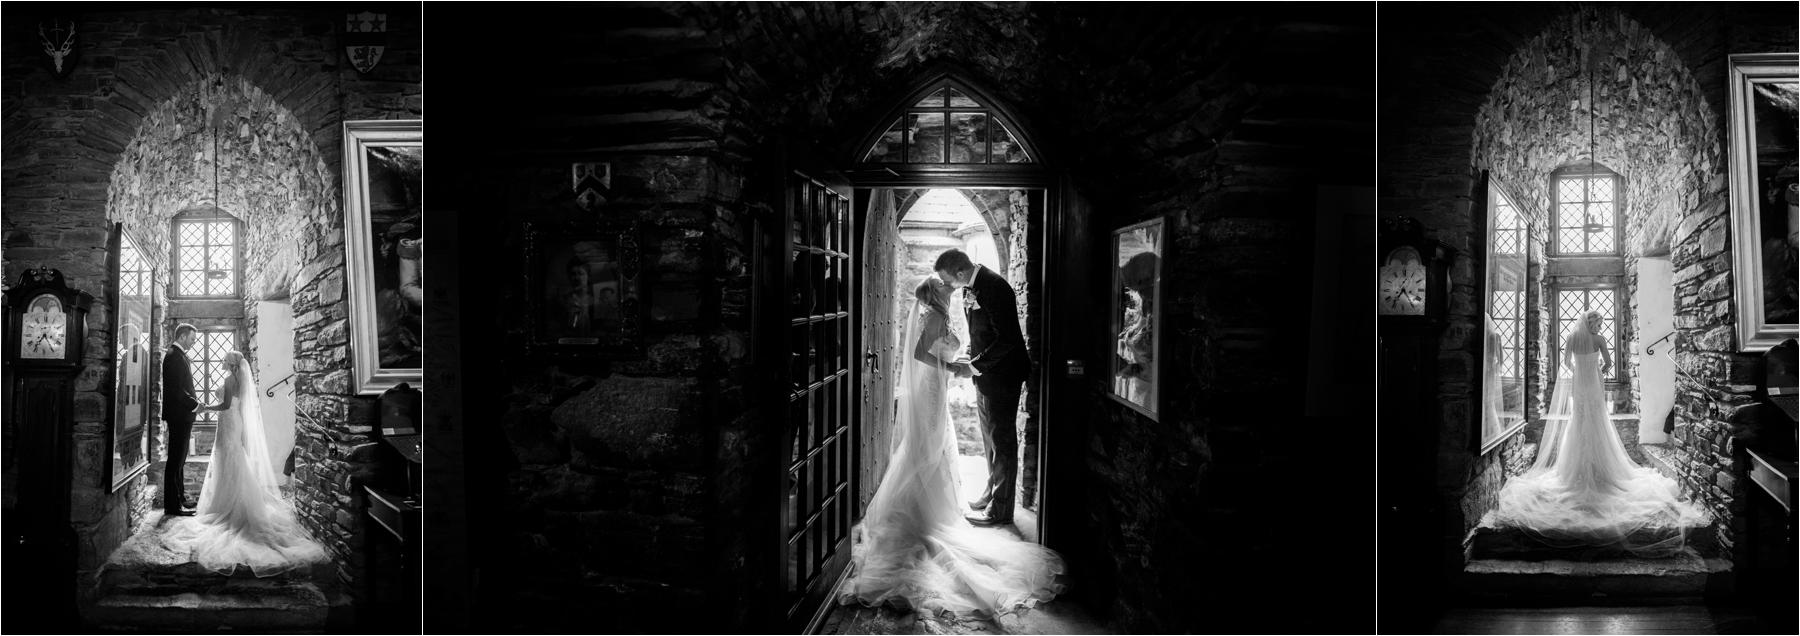 Eilean donan castle couple shot photograph